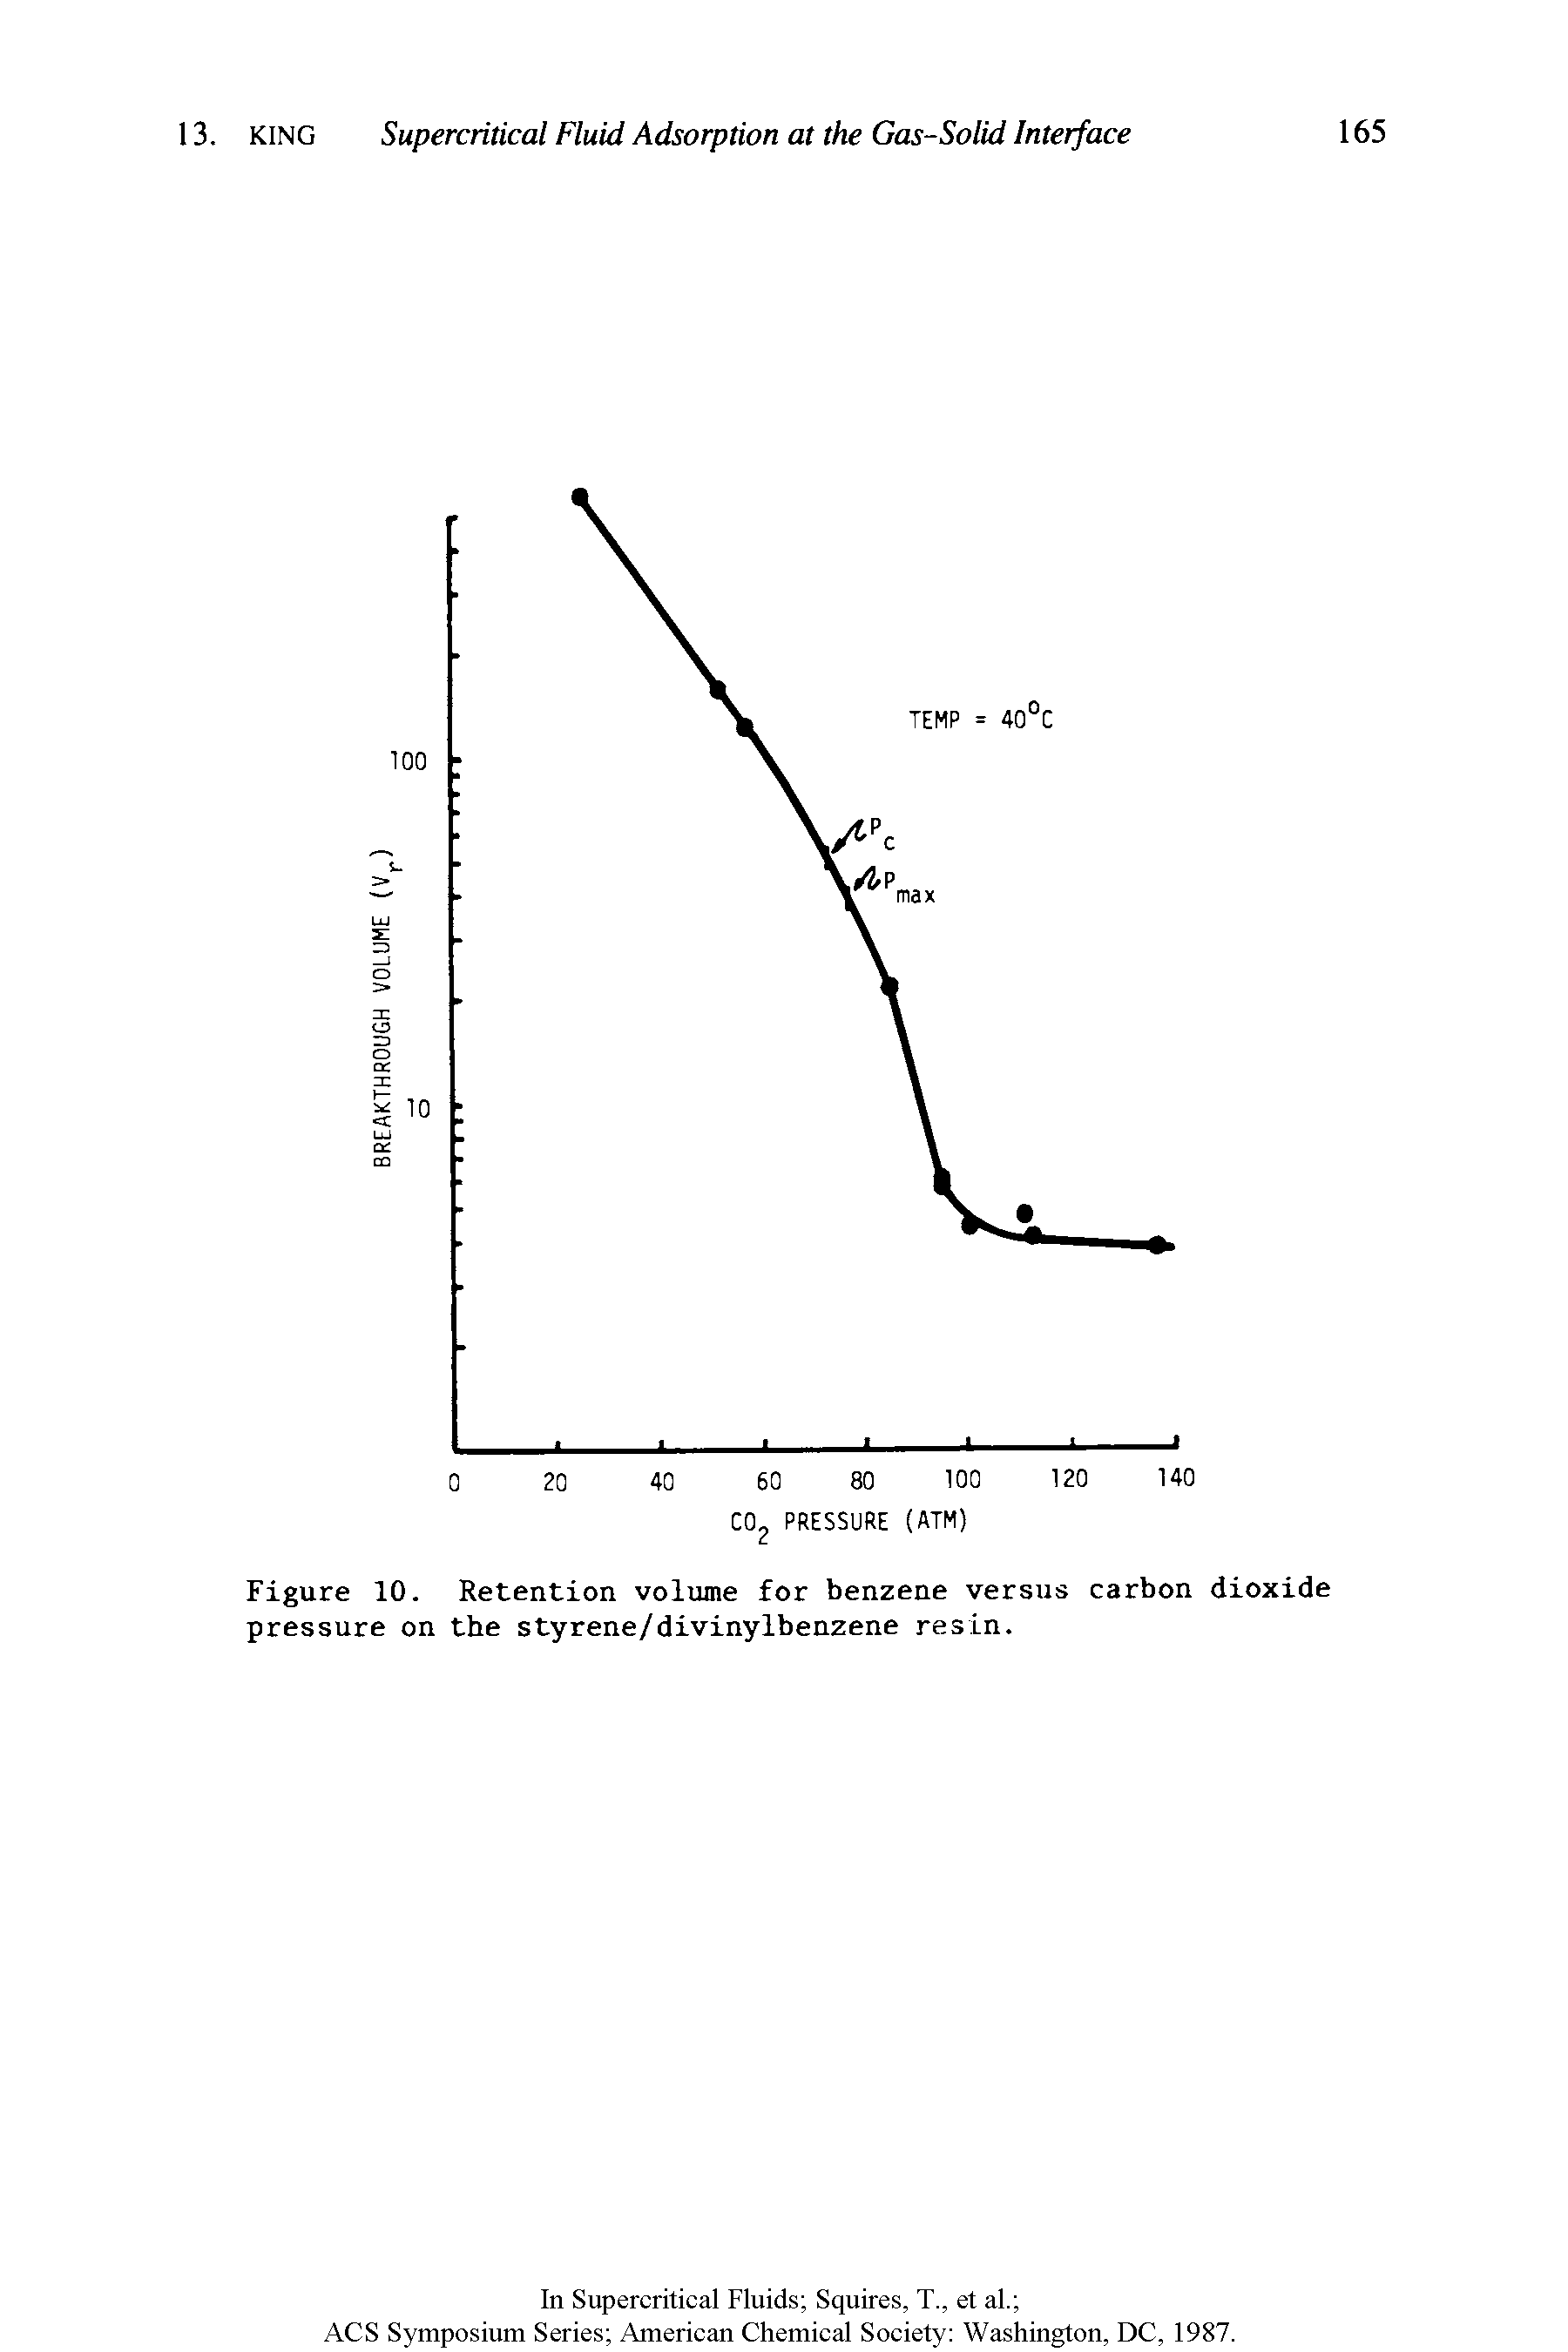 Figure 10. Retention volume for benzene versus carbon dioxide pressure on the styrene/divinylbenzene resin.